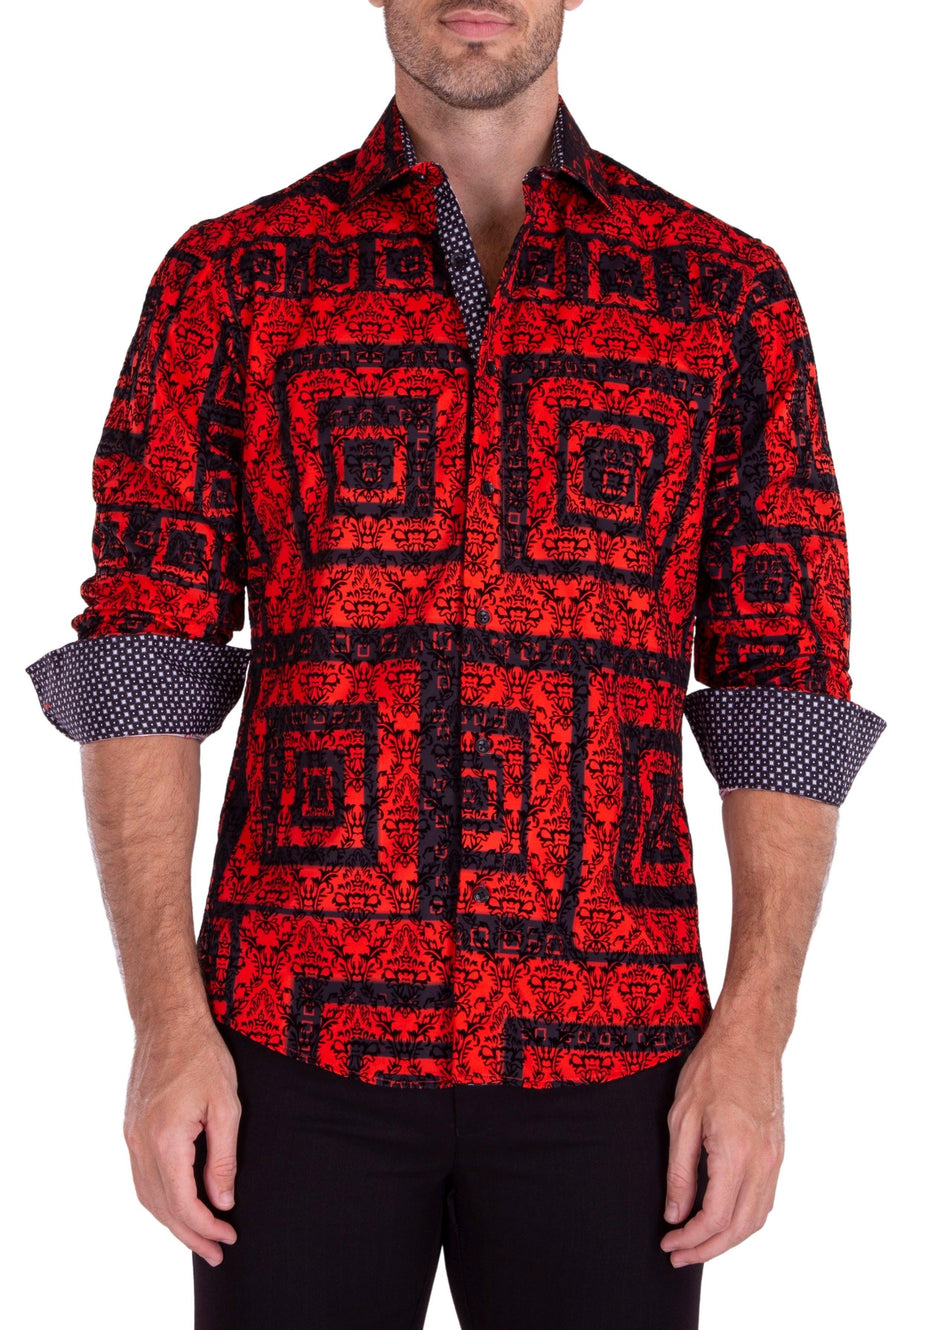 Maze Pattern Velvet Texture Long Sleeve Dress Shirt Red